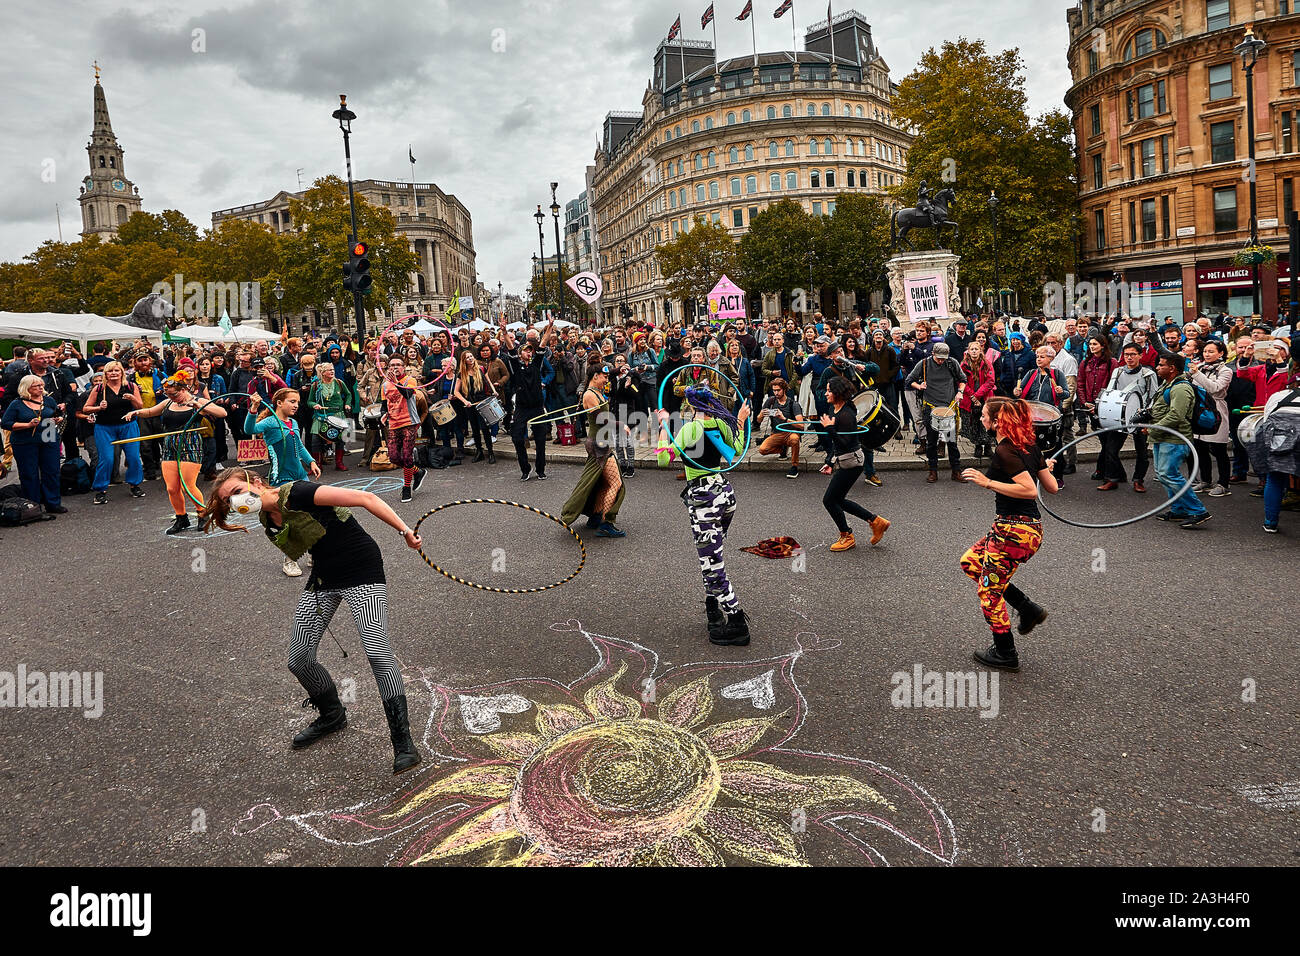 Londres, Reino Unido - Oct 8, 2019: Hula-hoop danzantes hacen una pantalla improvisada en el segundo día de una ocupación de Trafalgar Square por activistas de extinción rebelión. Foto de stock